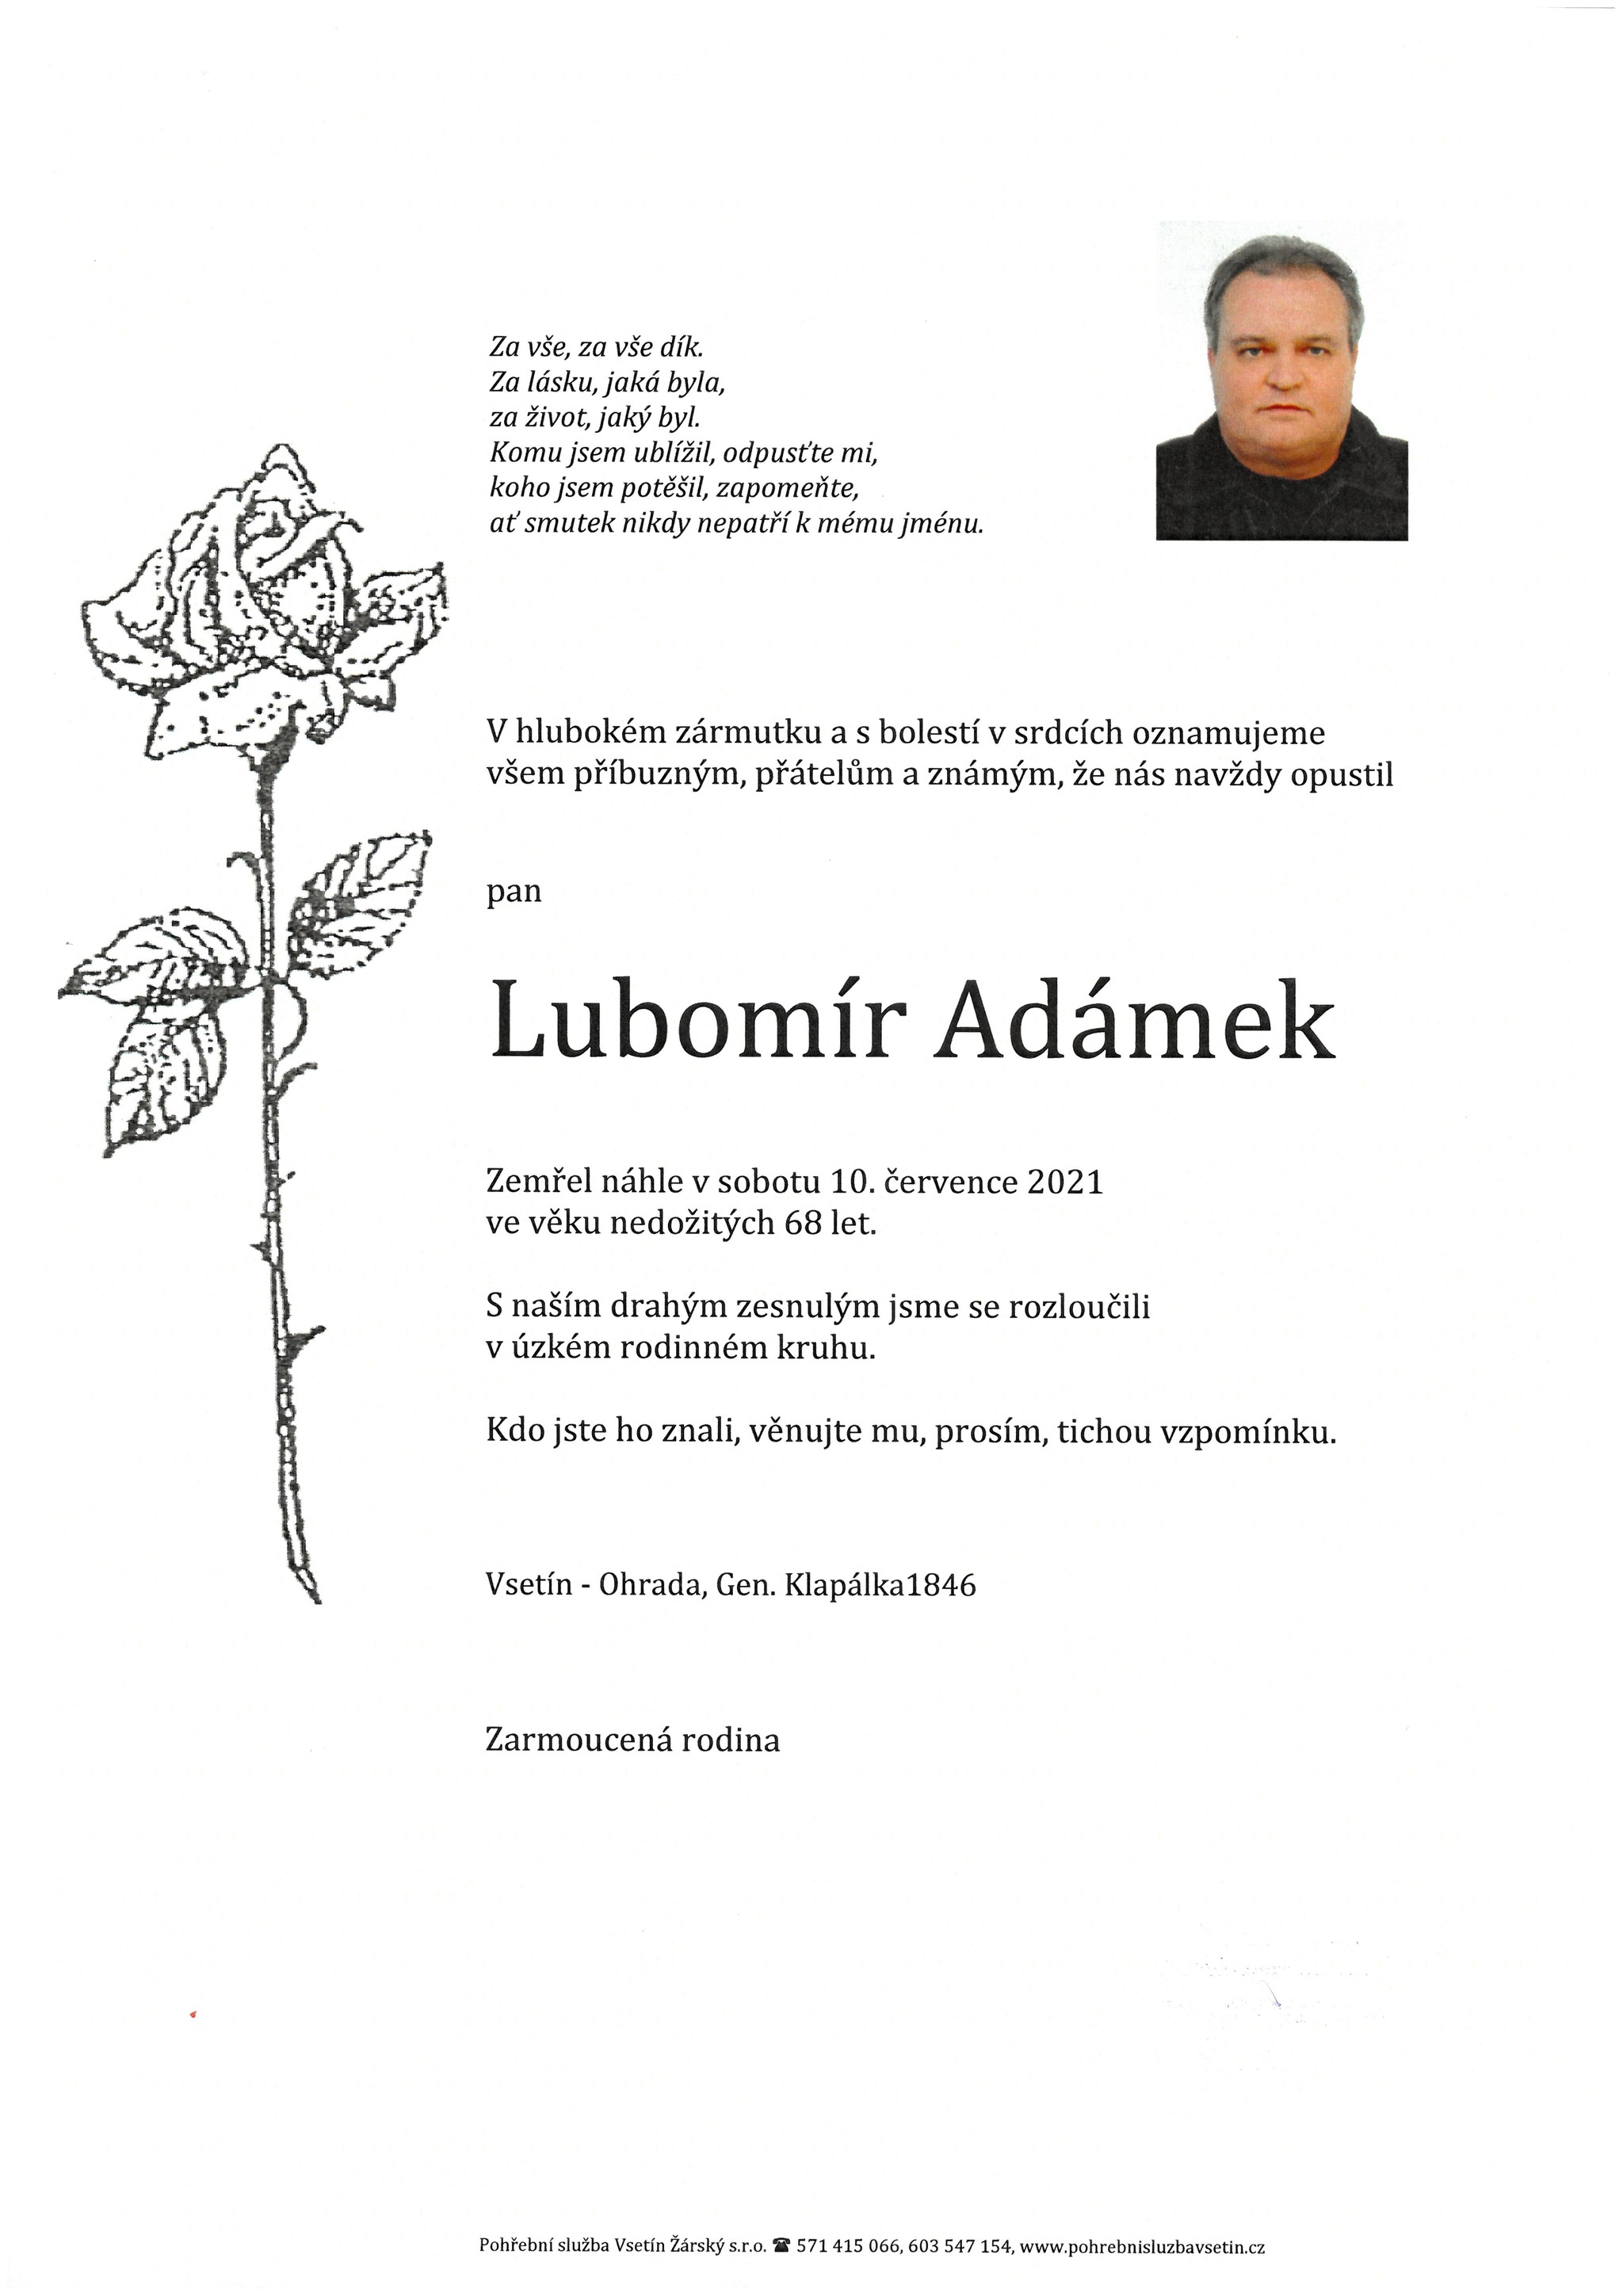 Lubomír Adámek